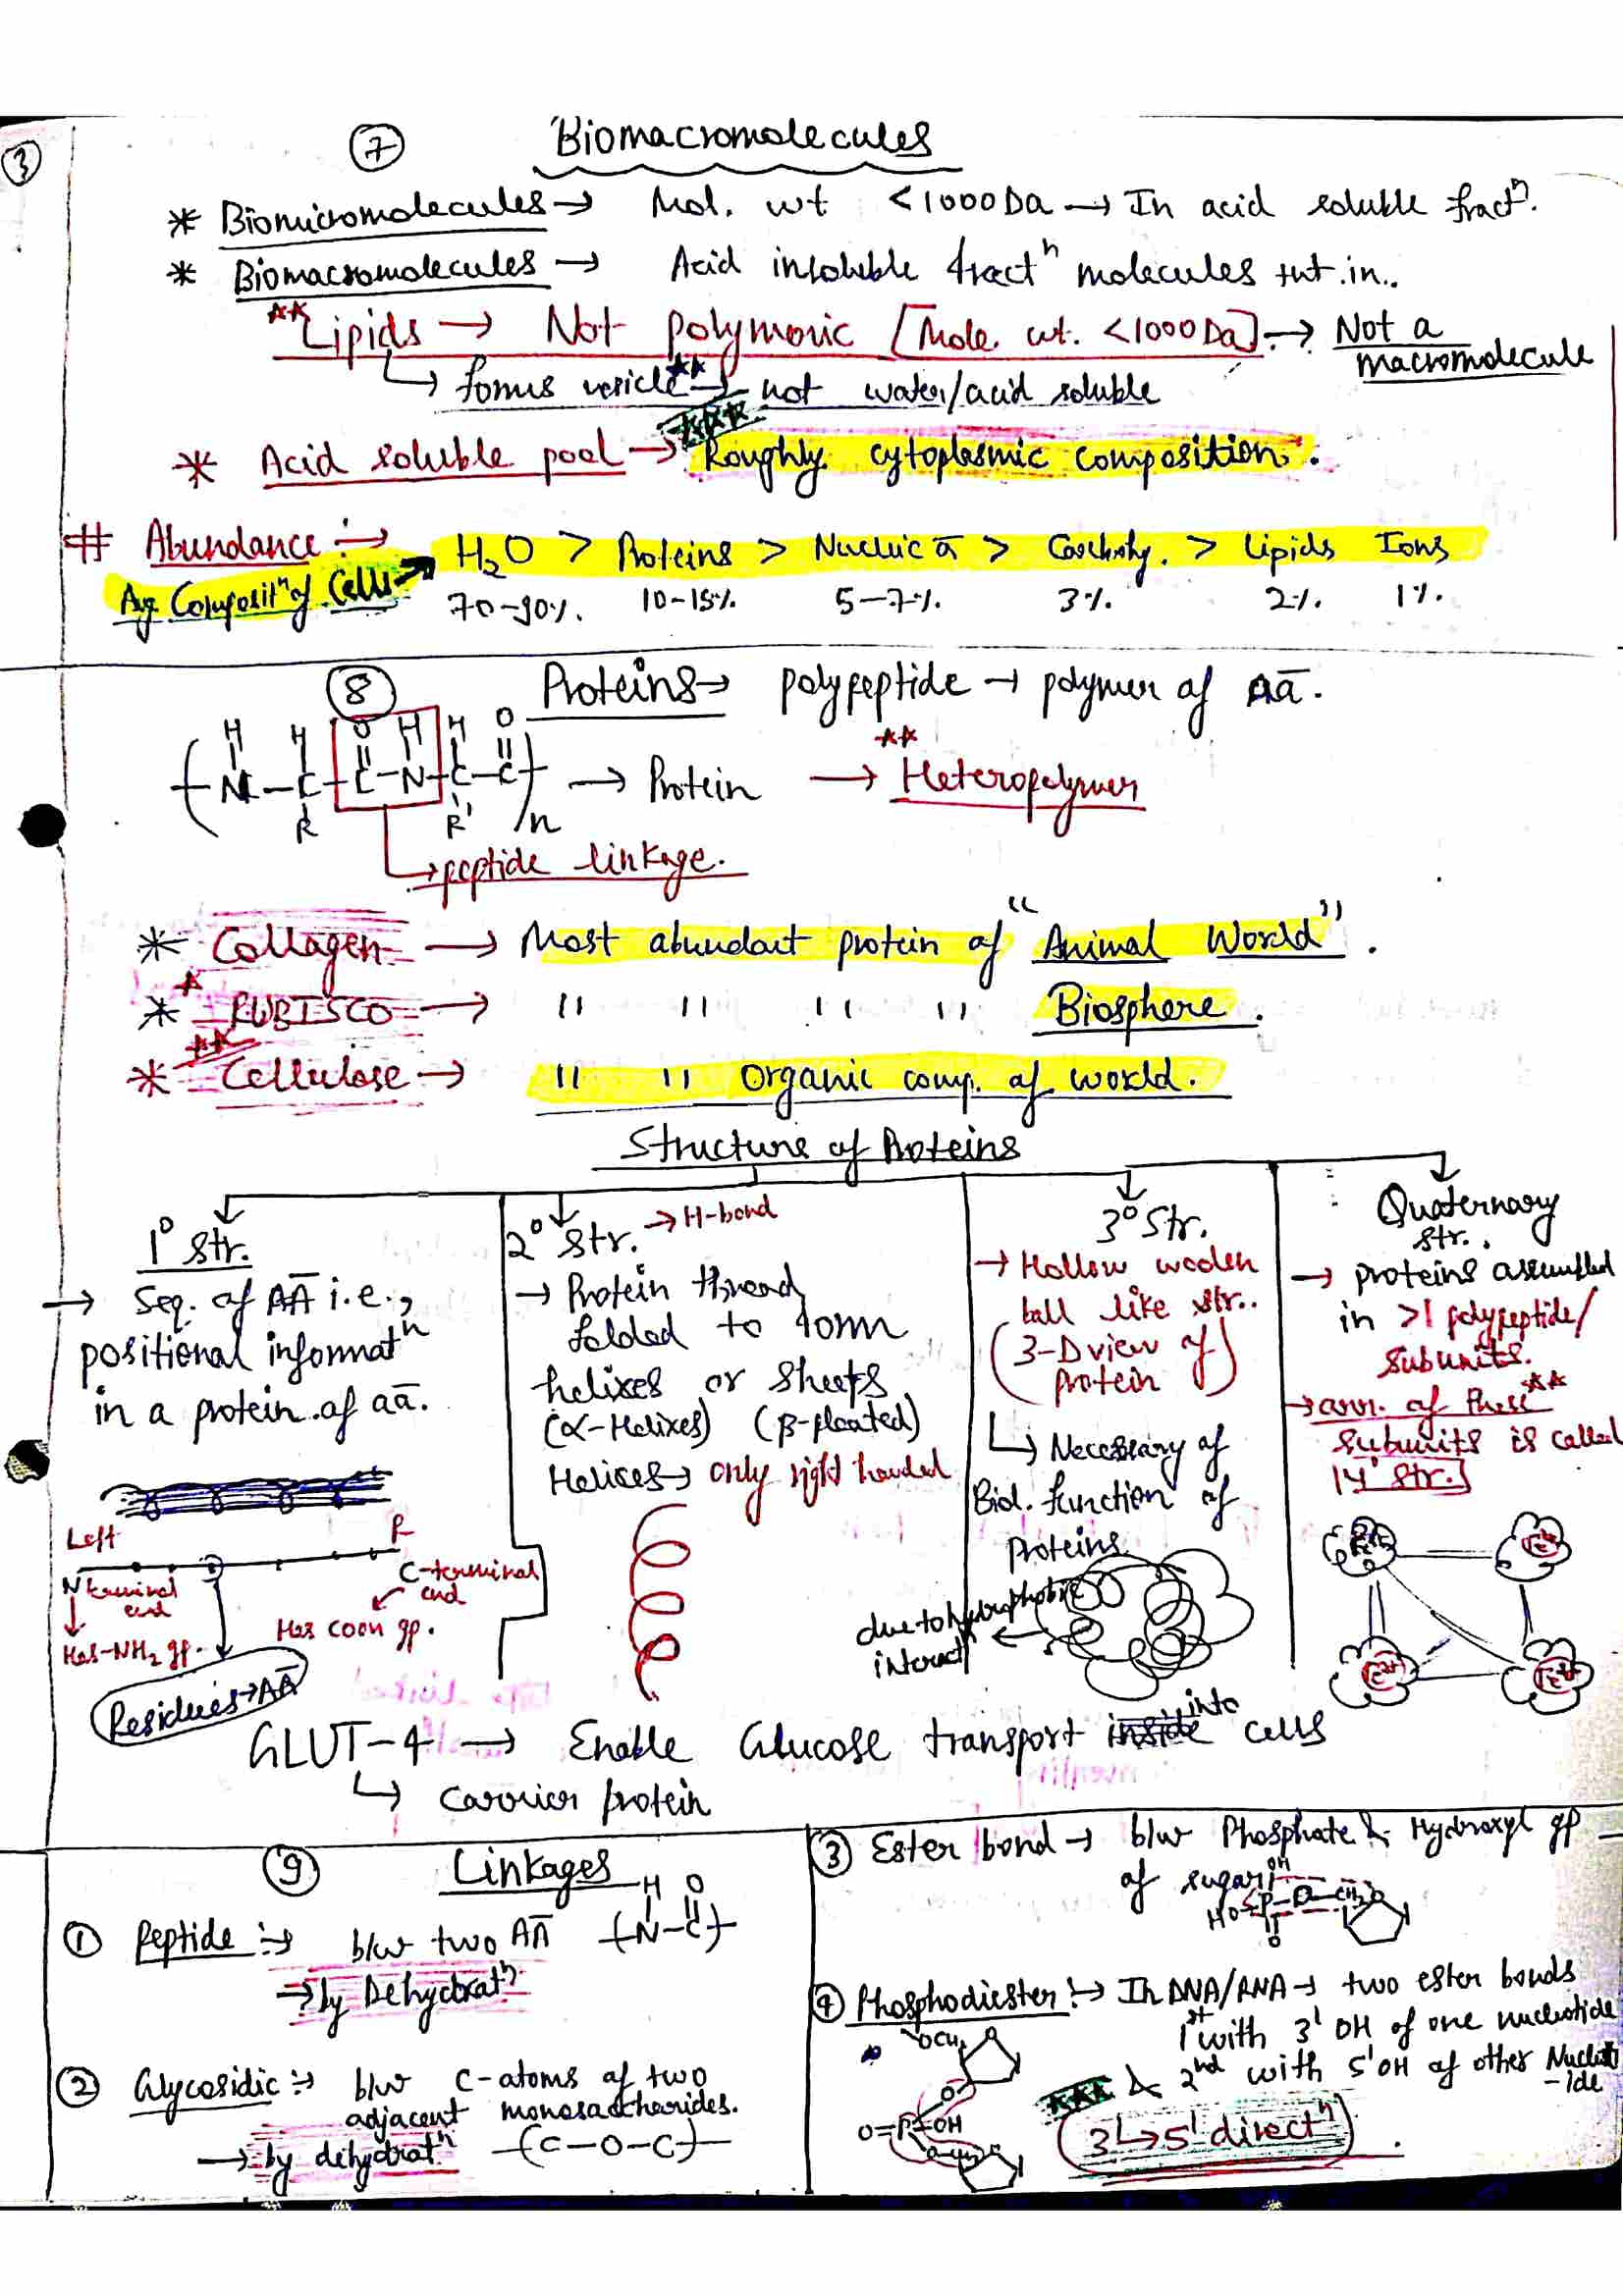 Chapter 9 Biomolecule Class 12 Biology Notes For Cbse Board And Neet Shop Handwritten Notes Shn 